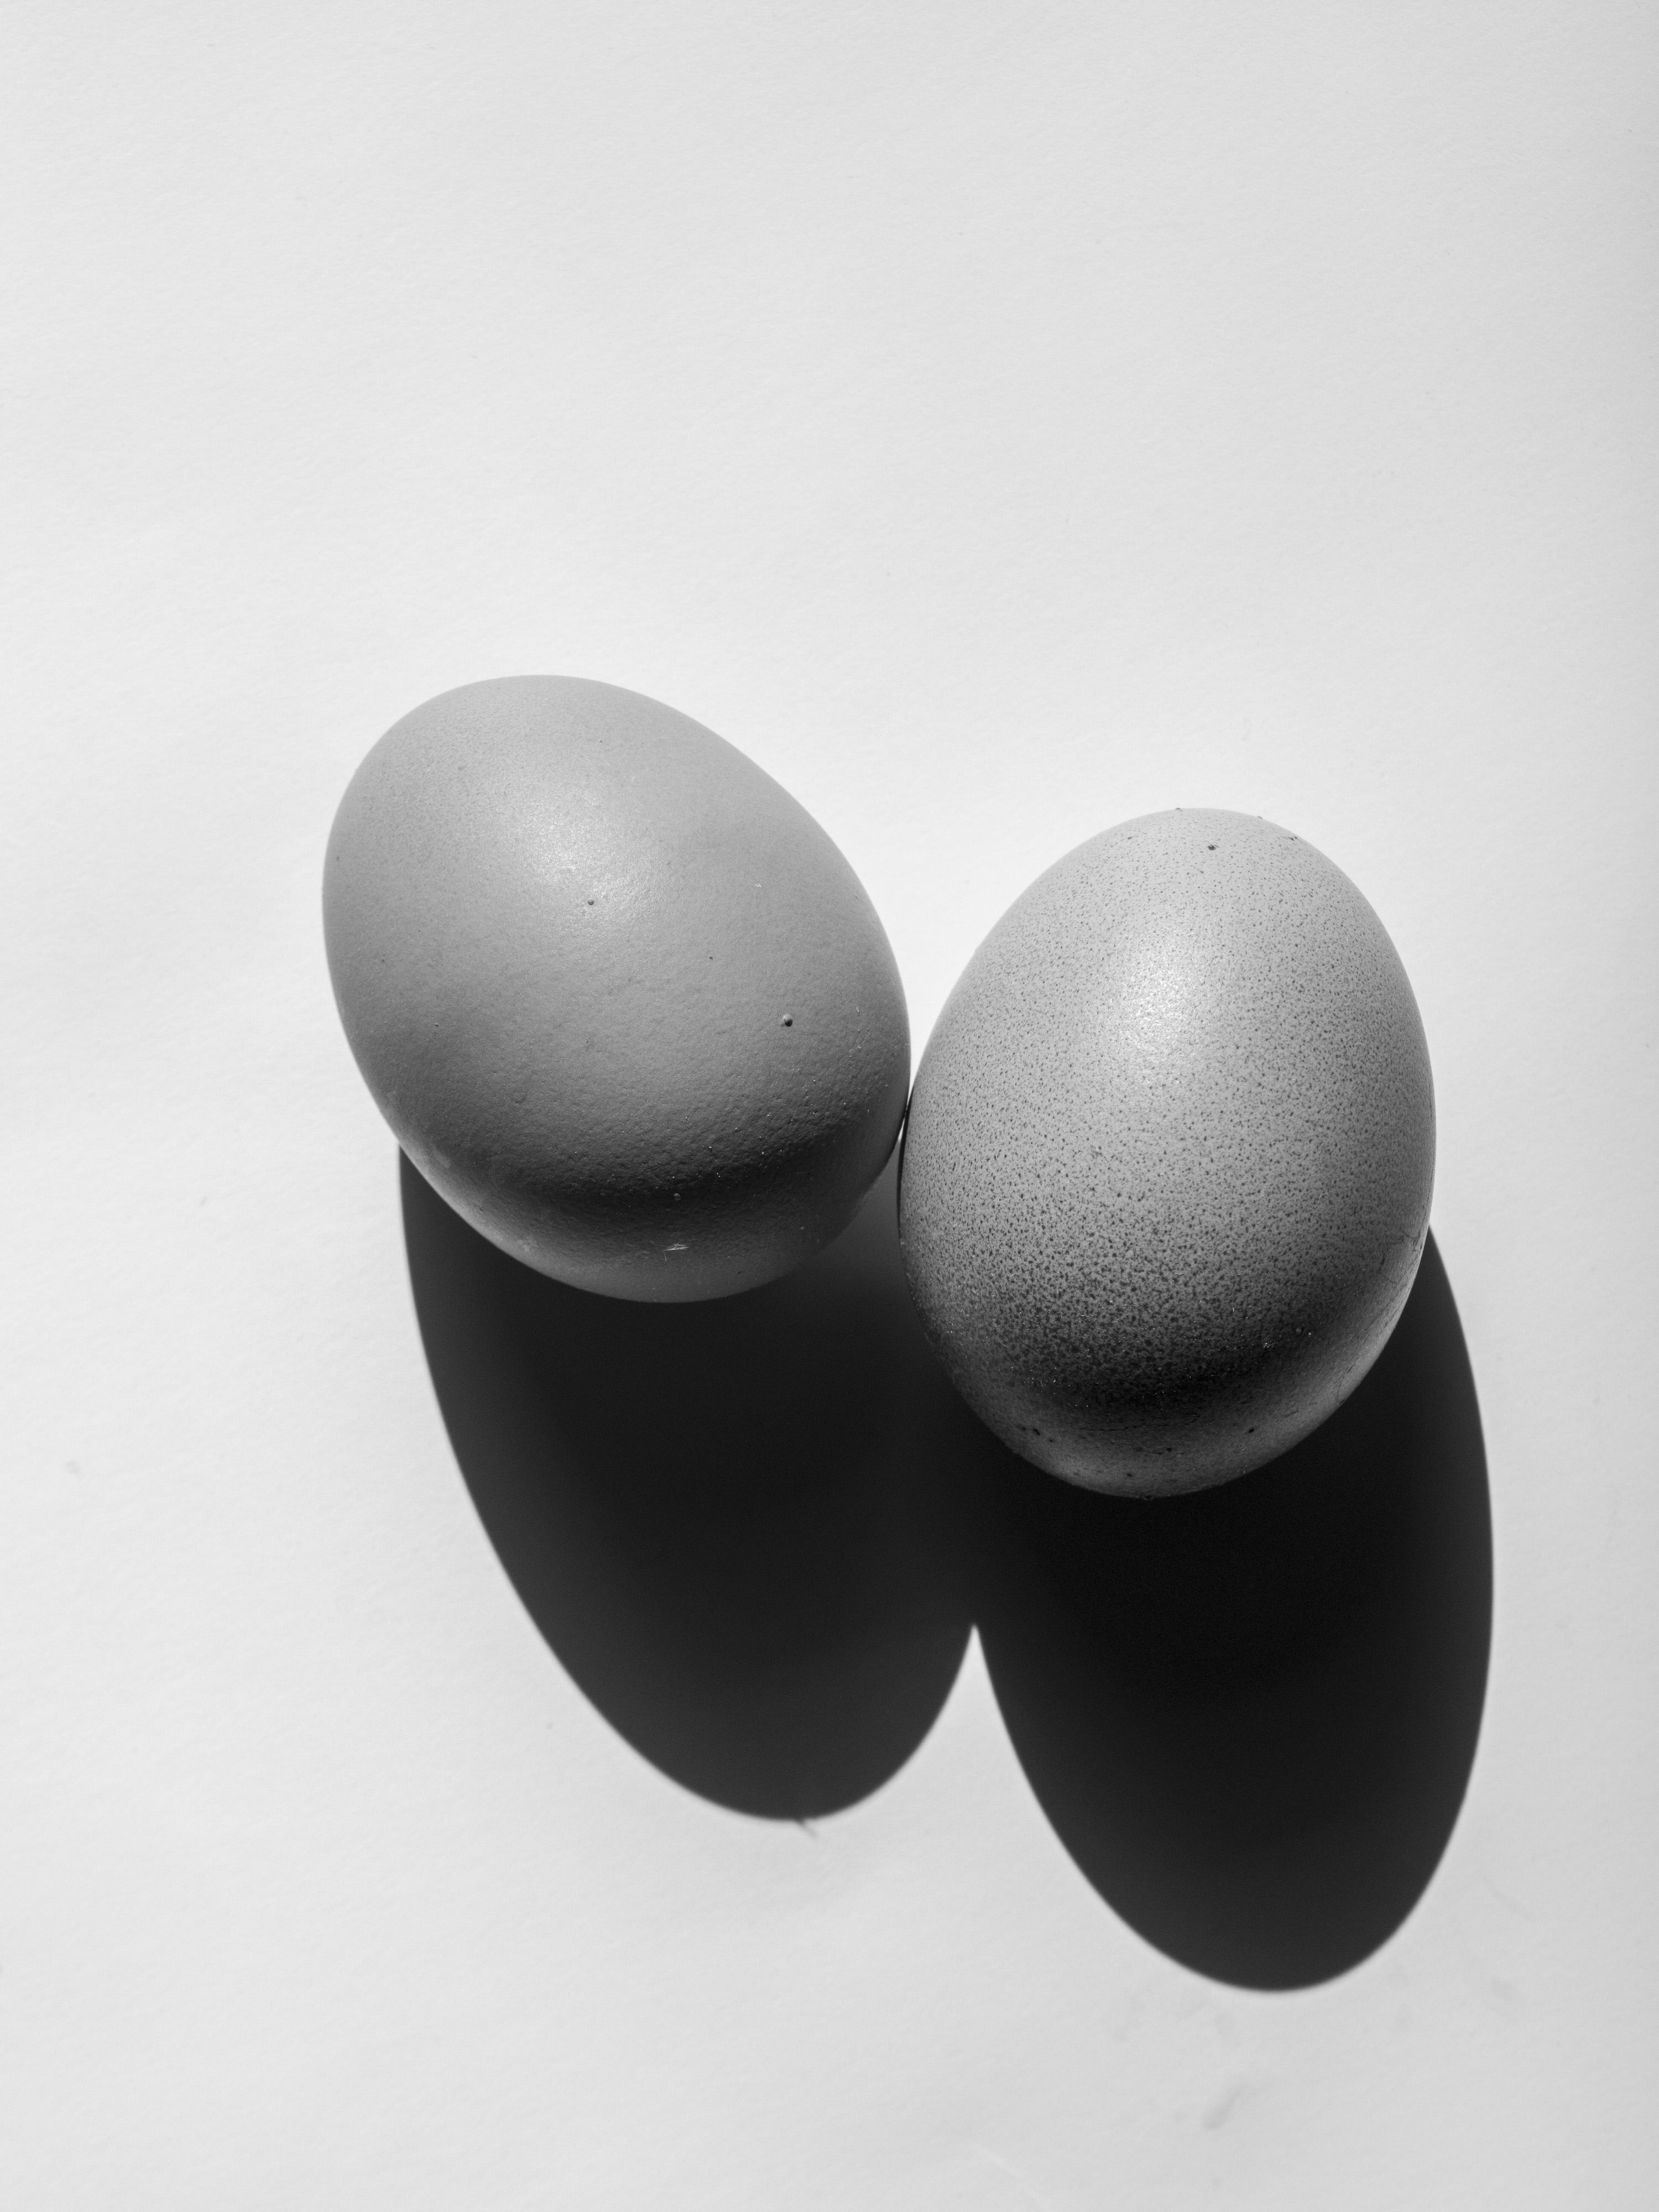 Still life eggs